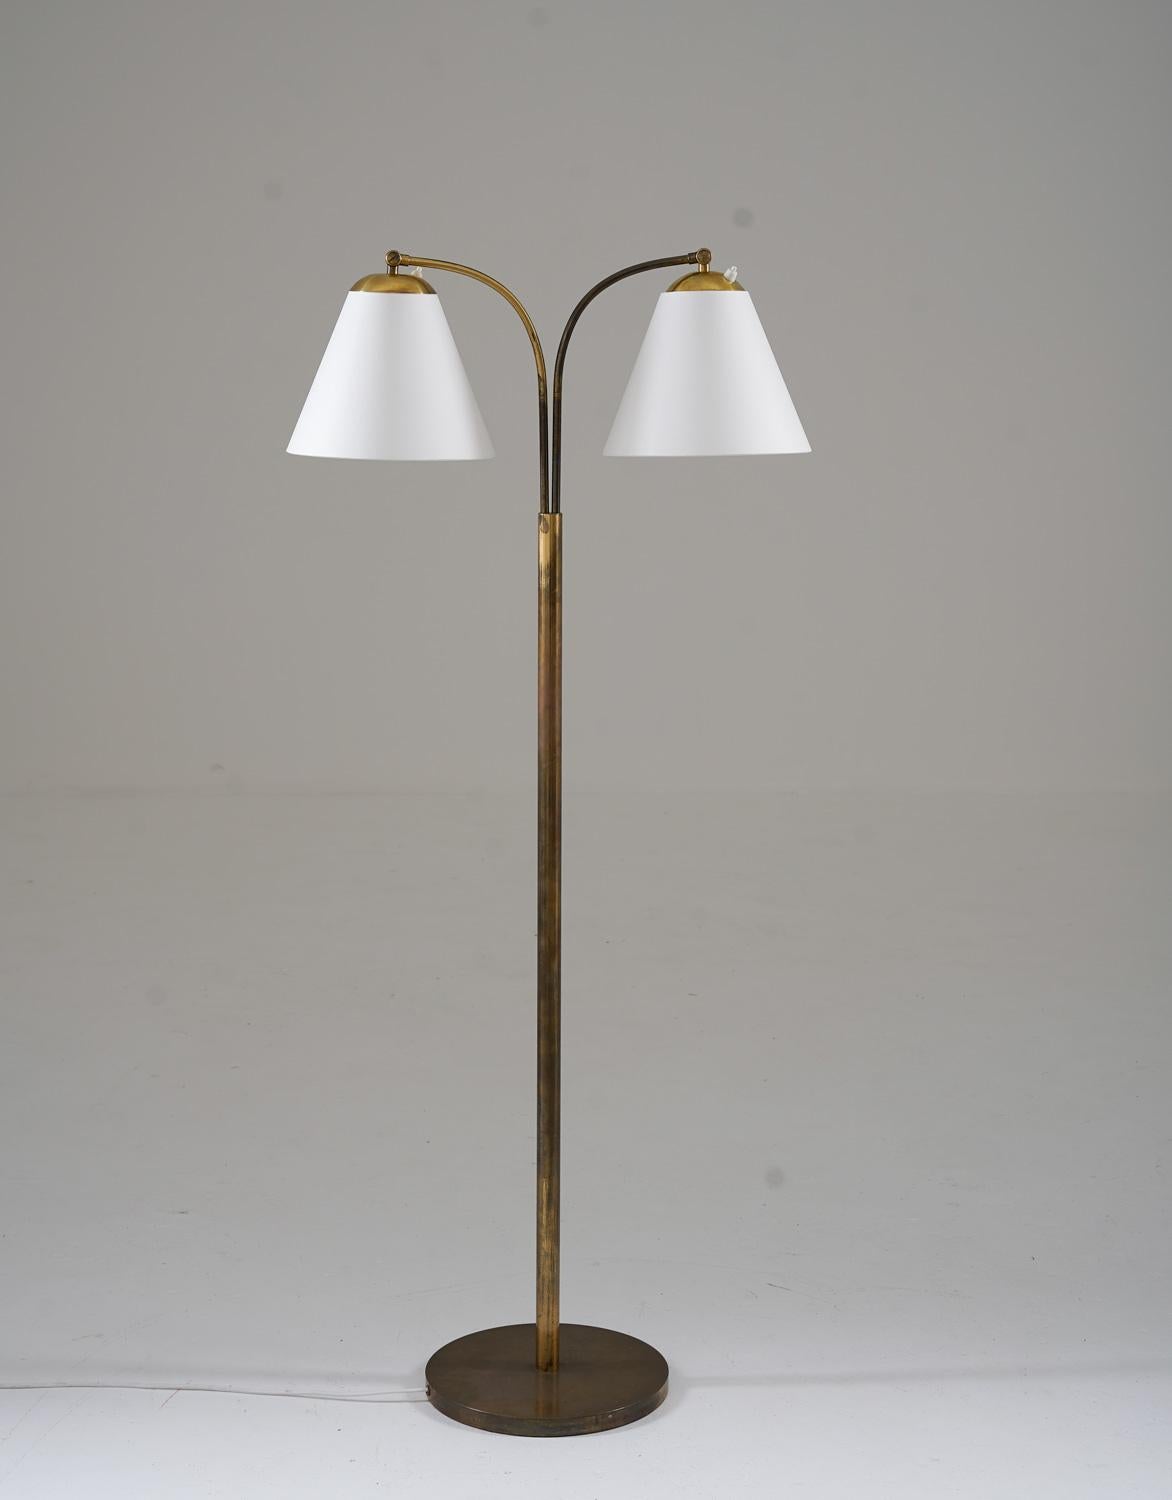 Dies ist eine schöne schwedische moderne Stehlampe, die in den 1940er Jahren in Schweden hergestellt wurde. Die Leuchte verfügt über einen Sockel und eine Stange aus Messing, die zwei Schwenkarme tragen, die die Schirme halten. Die Schwenkarme sind